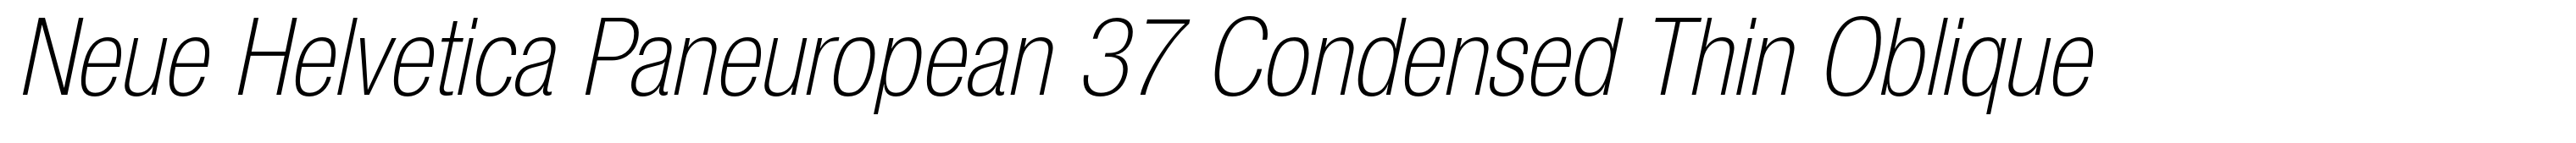 Neue Helvetica Paneuropean 37 Condensed Thin Oblique